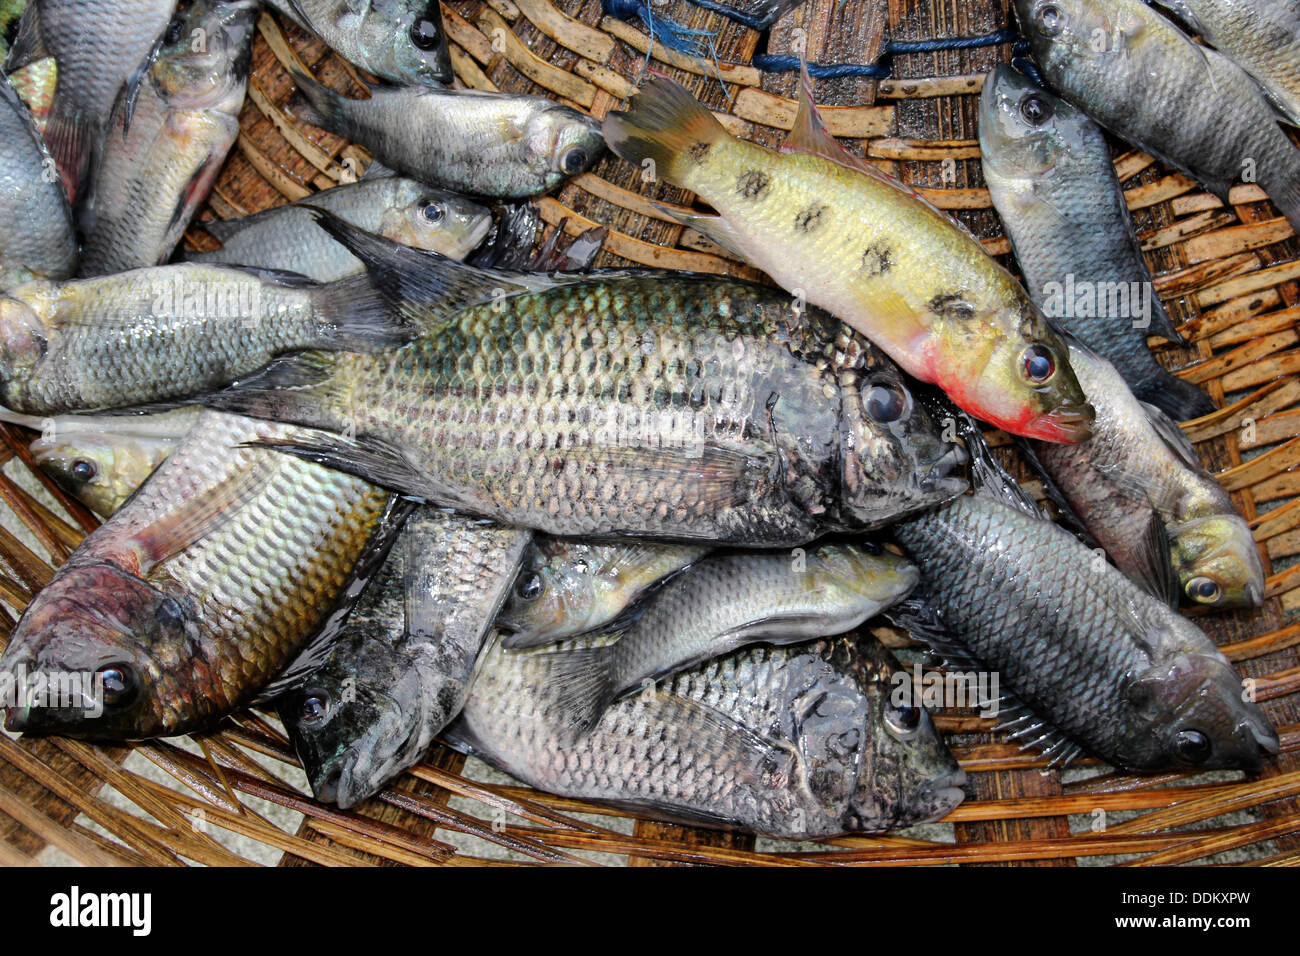 Los peces capturados en el lago Bosumtwi incluidos los cíclidos endémicos frempongi Hemichromis y el cercano de Tilapia busumana cíclidos endémicos Foto de stock